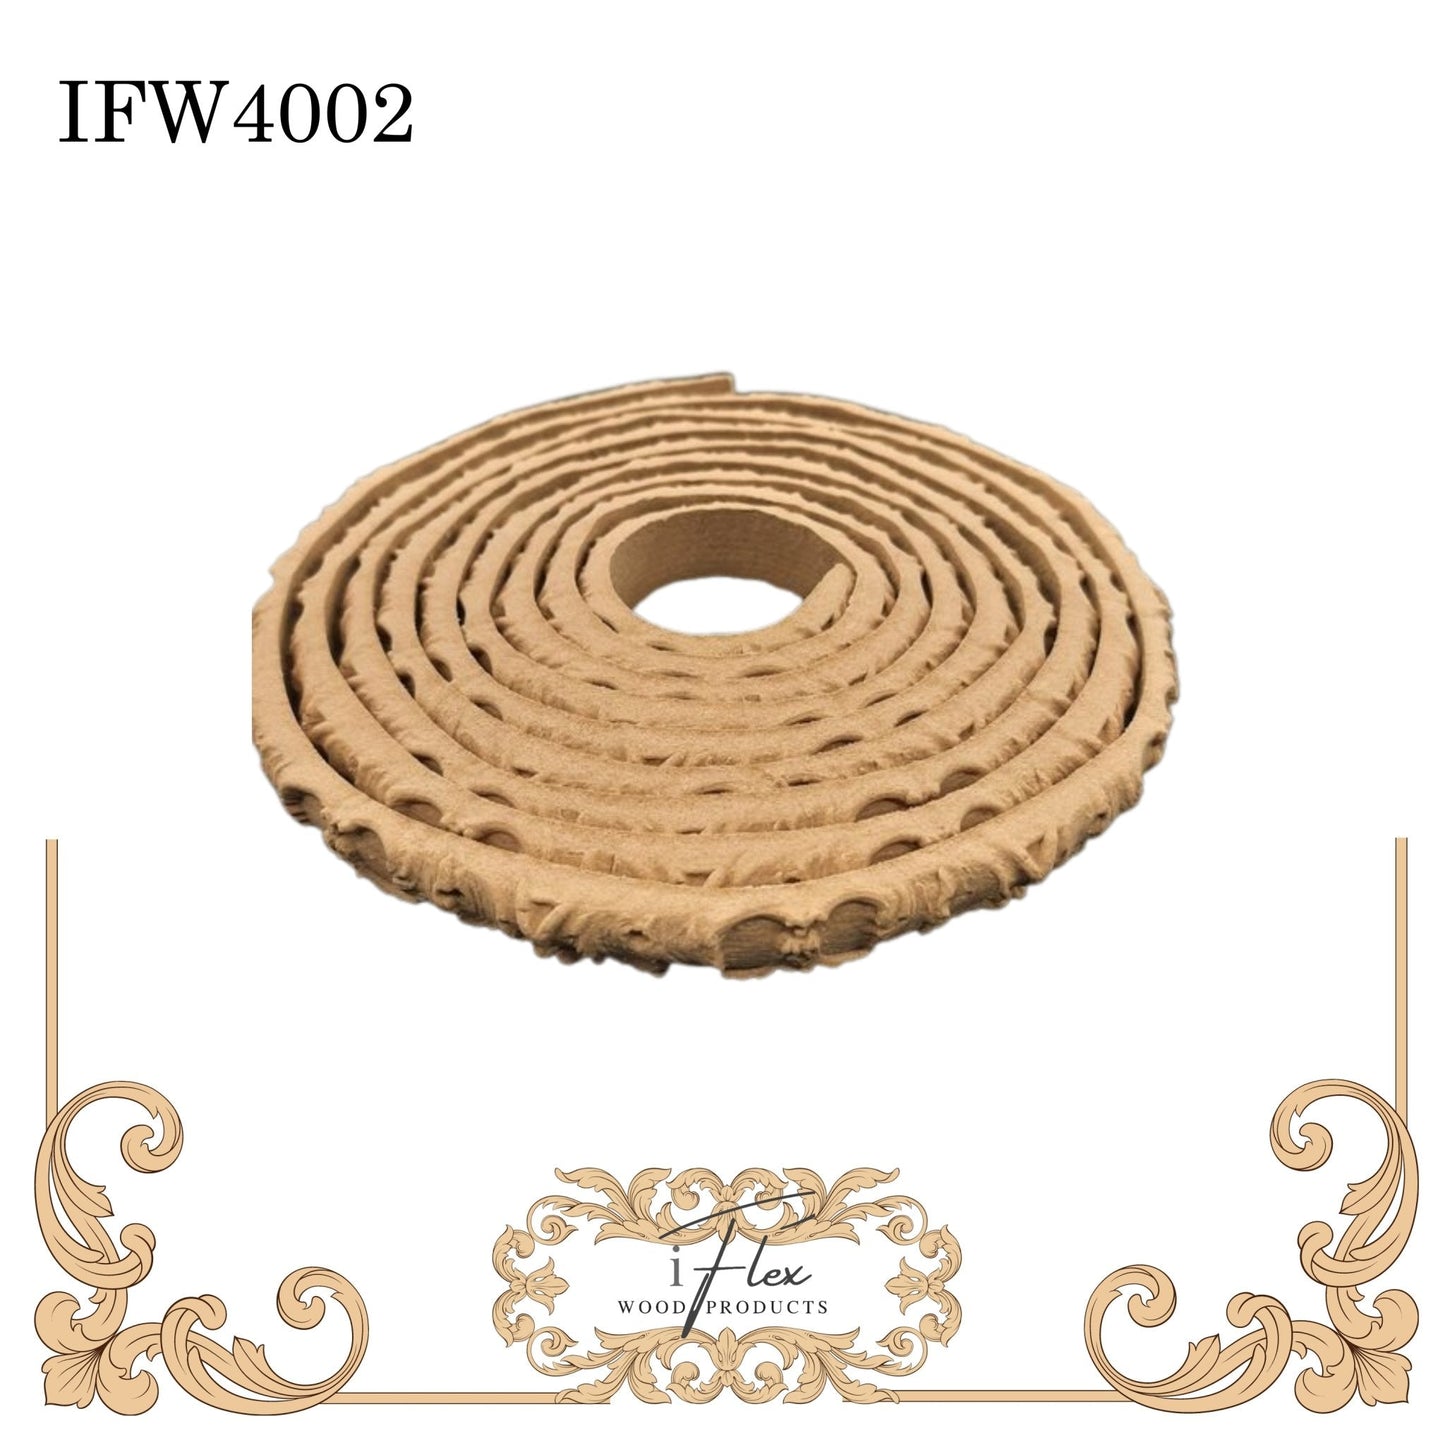 IFW 4002